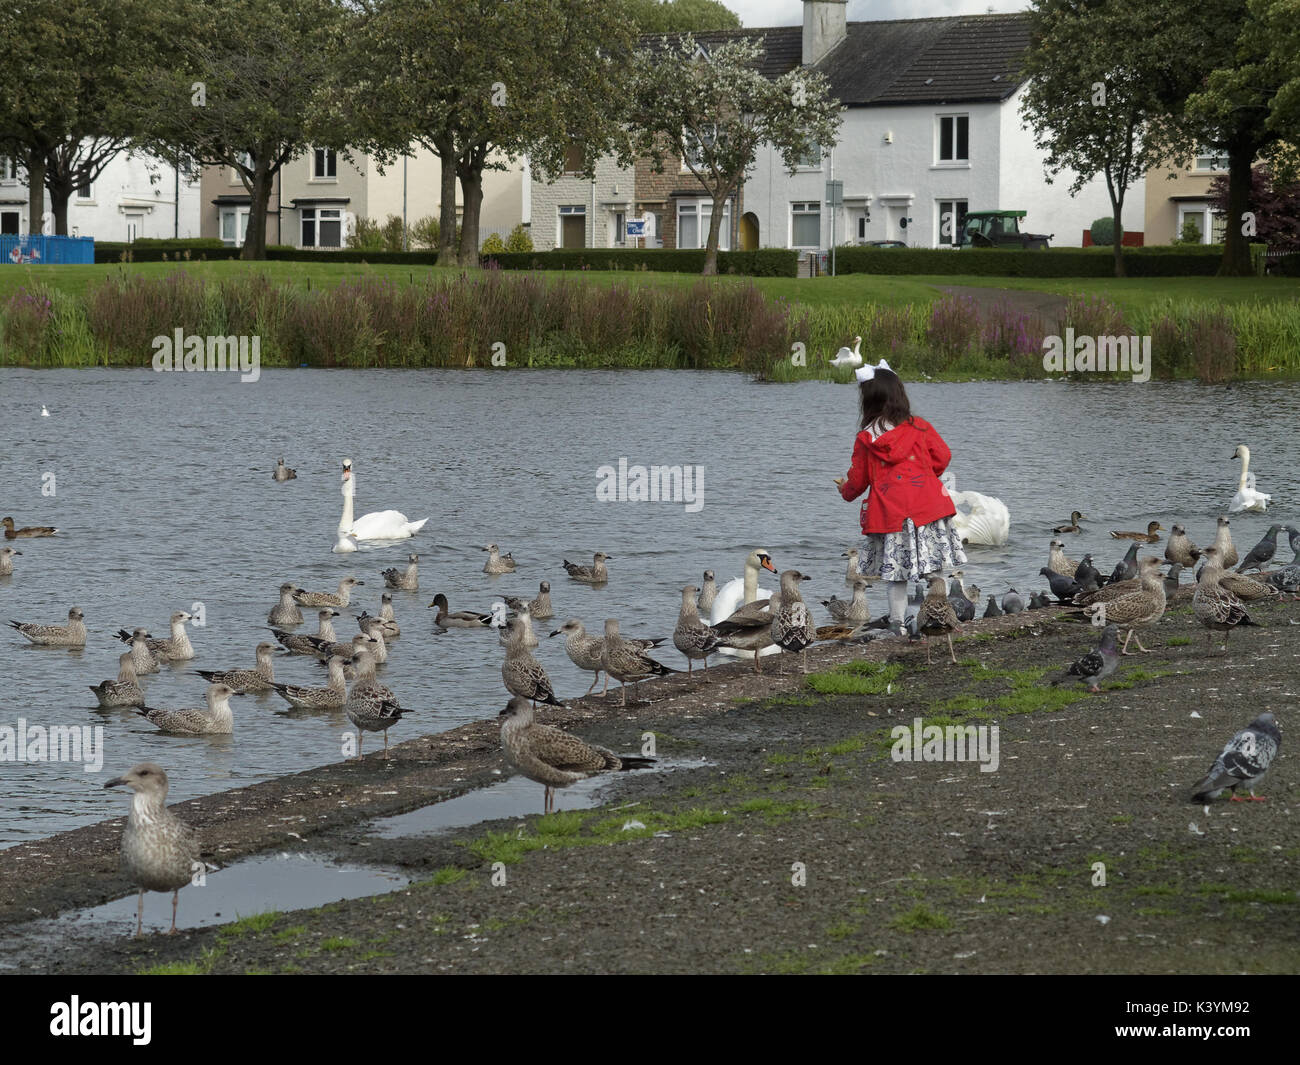 Petite fille dans un manteau rouge l'alimentation des oiseaux en knightswood park Glasgow Pond, cygnes mouettes Banque D'Images